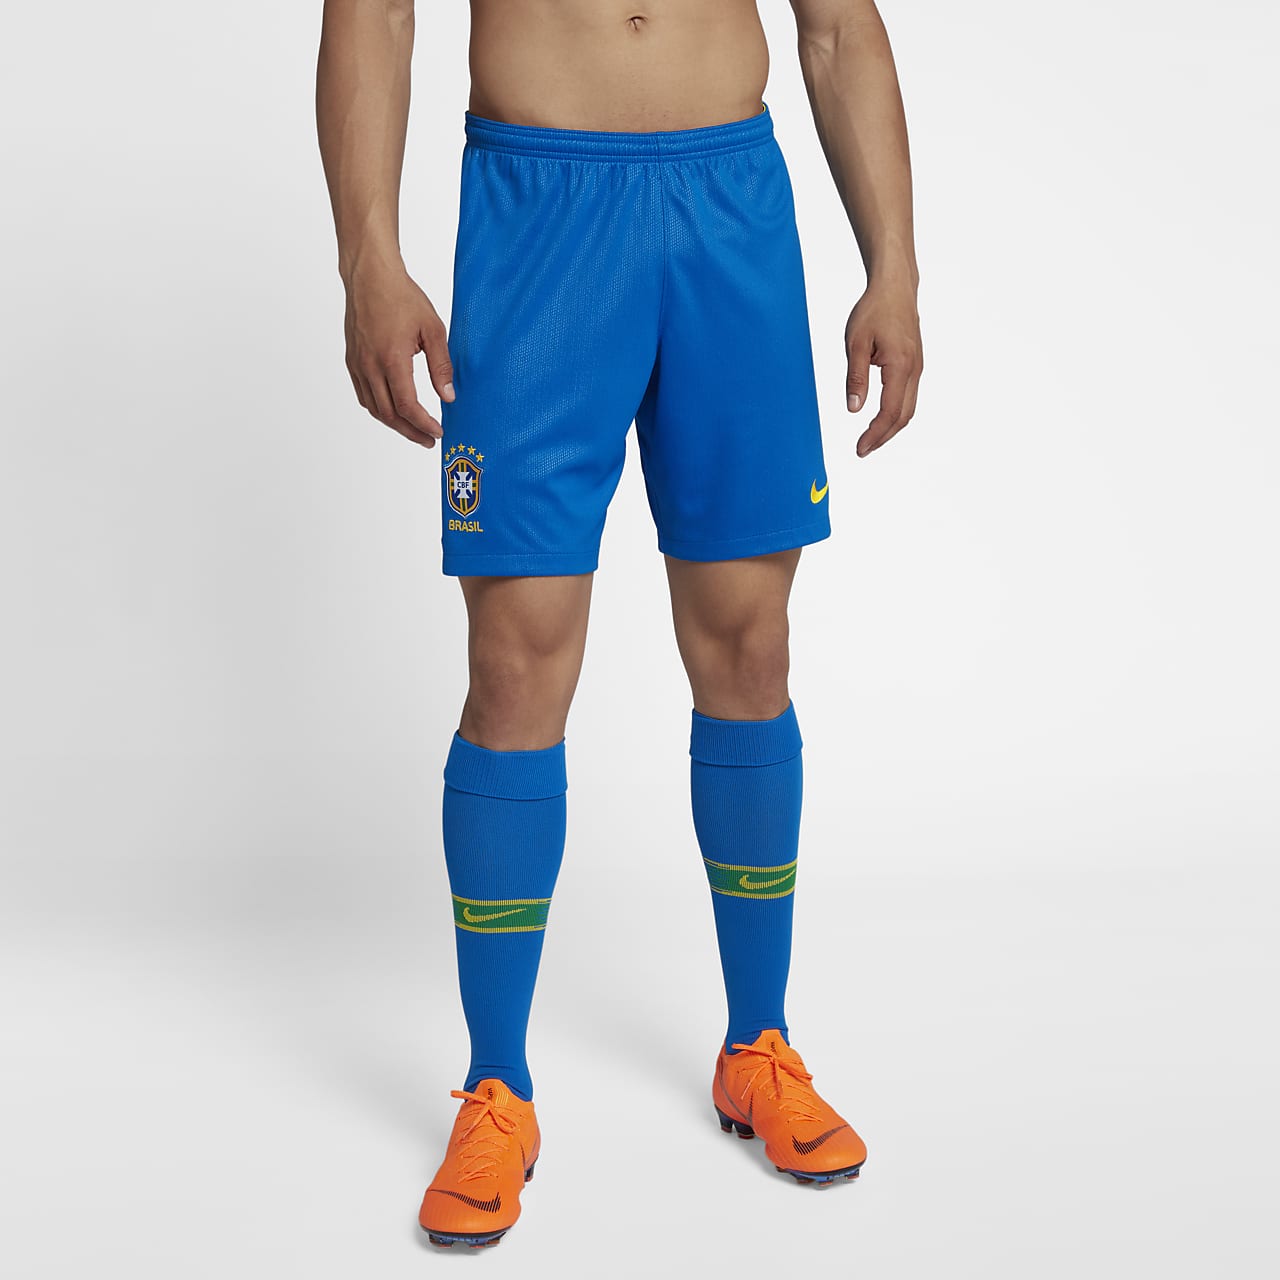 2018 赛季巴西队主场男子足球球迷短裤